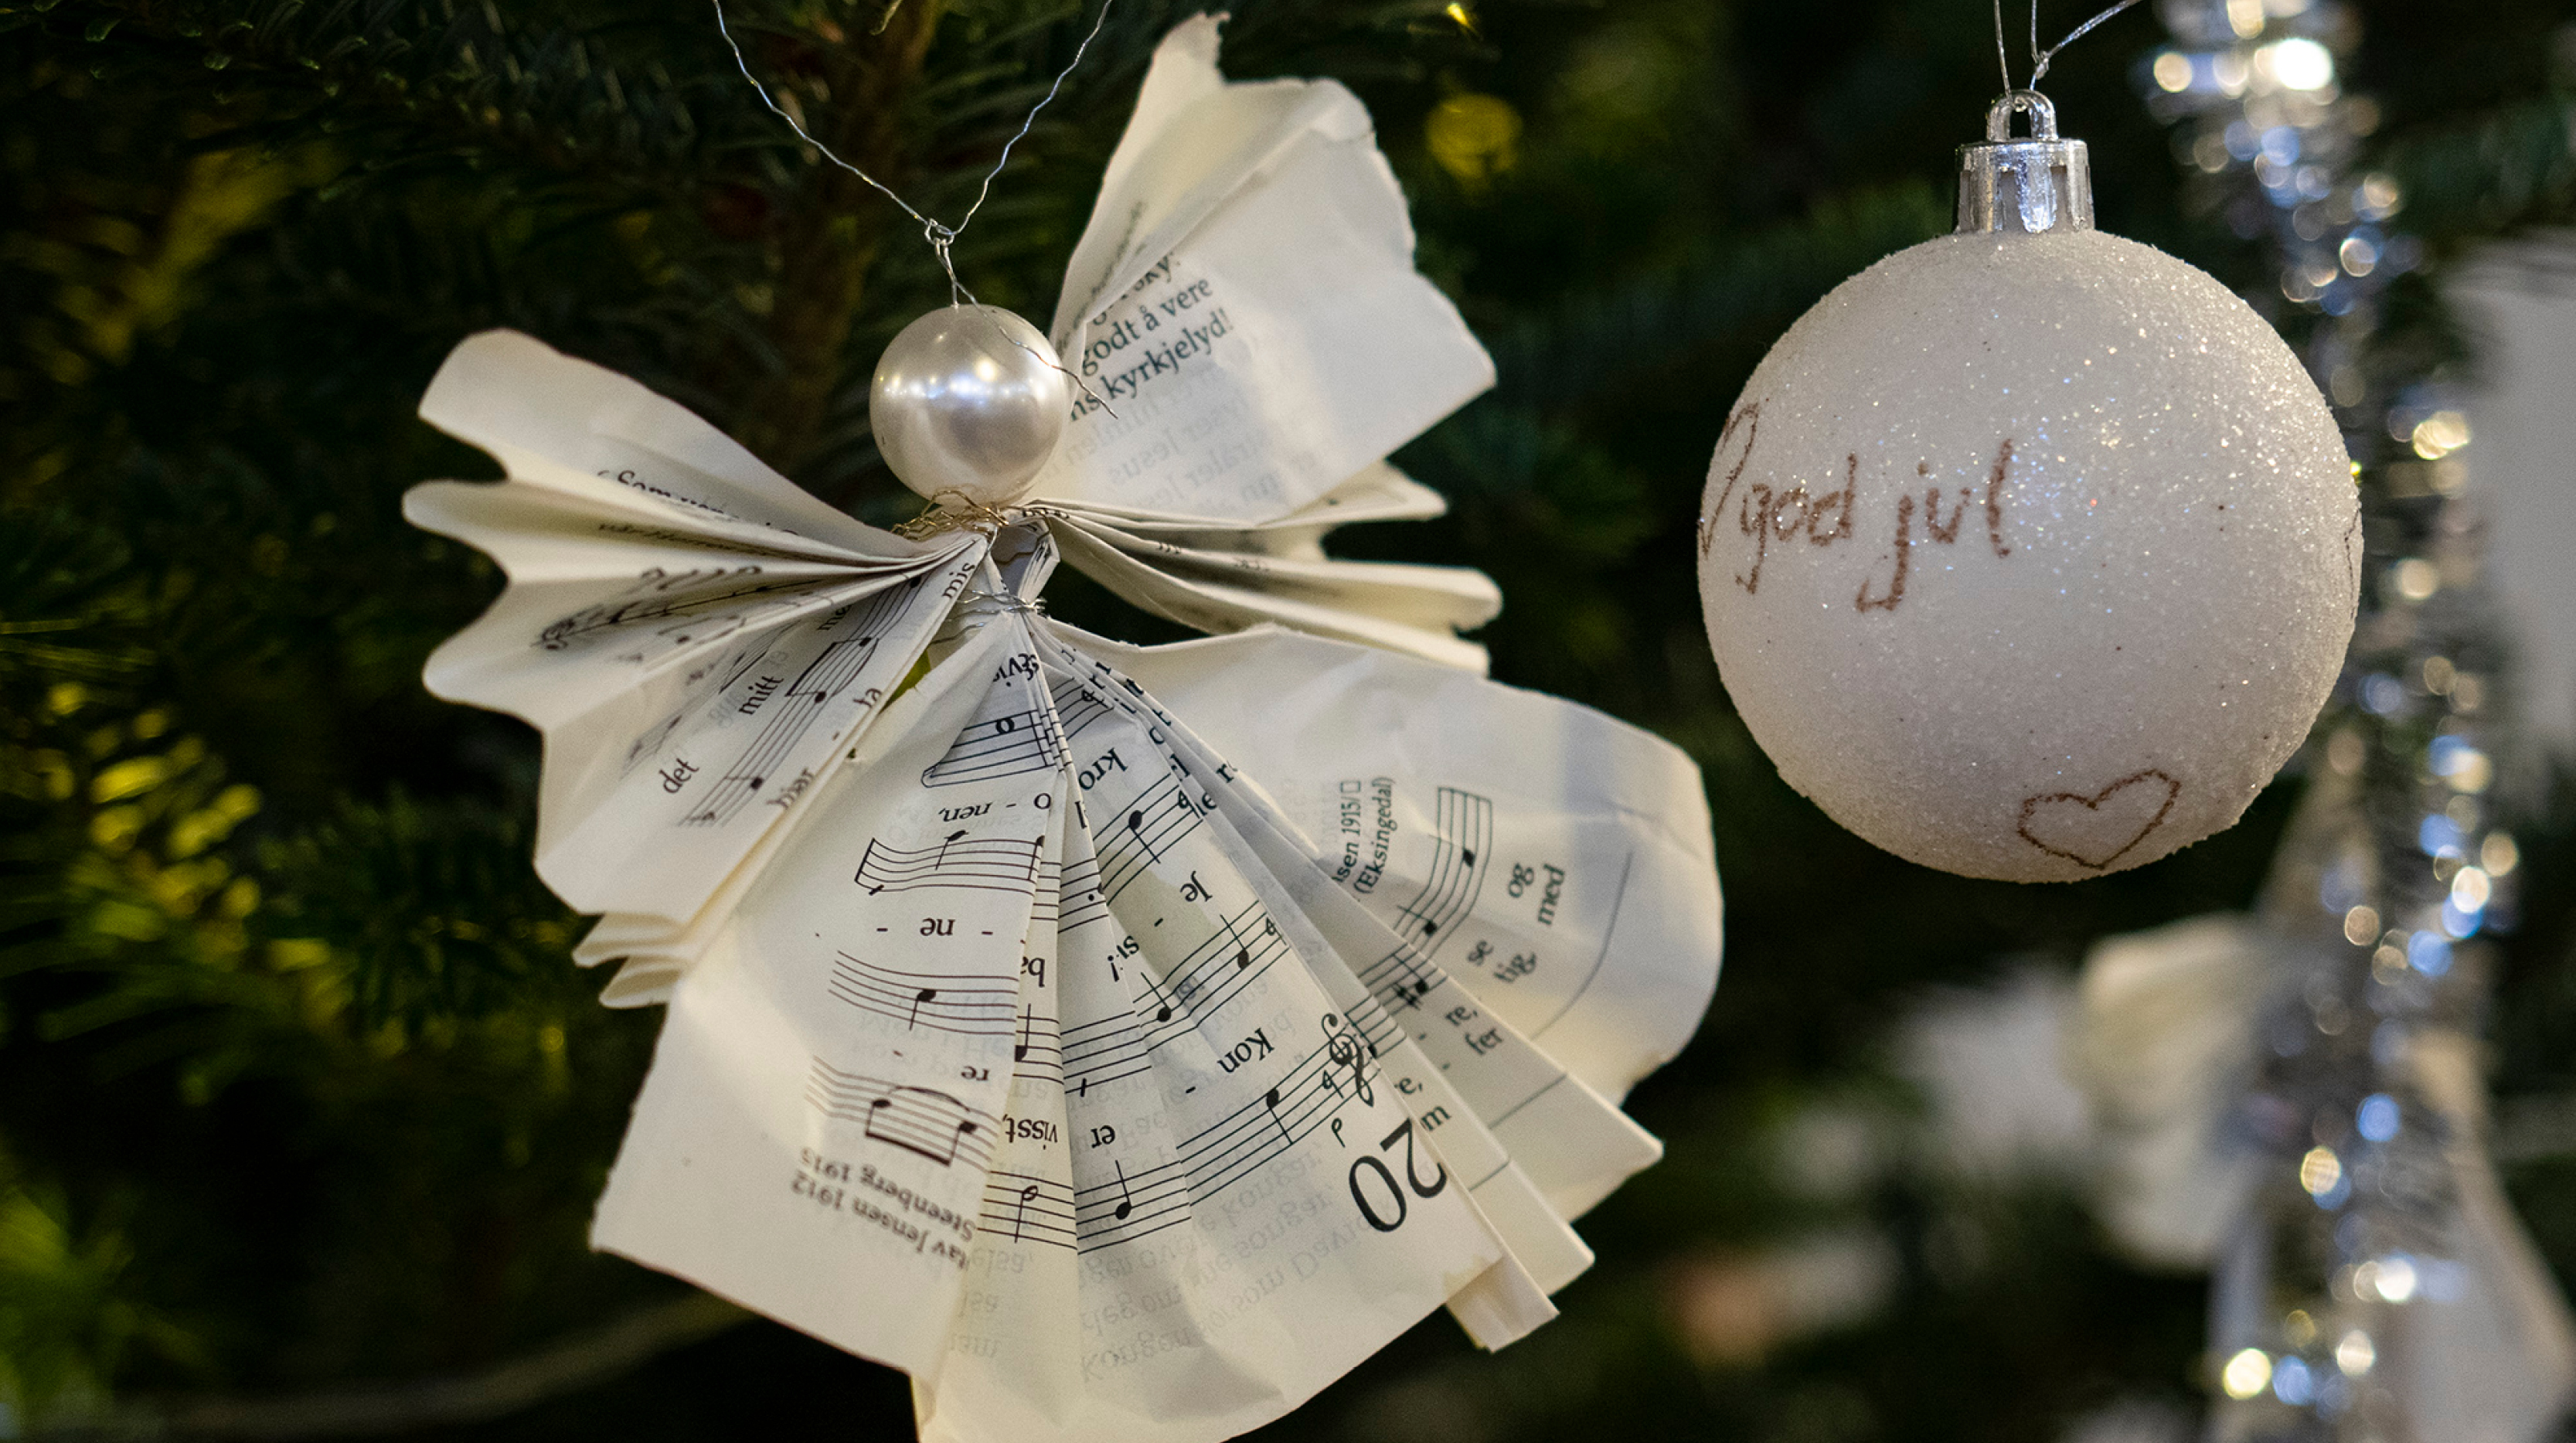 Digital adventskalender: I år kan du følge med på menighetens digitale adventskalender. Vi åpner en ny luke hver dag frem mot jul. 